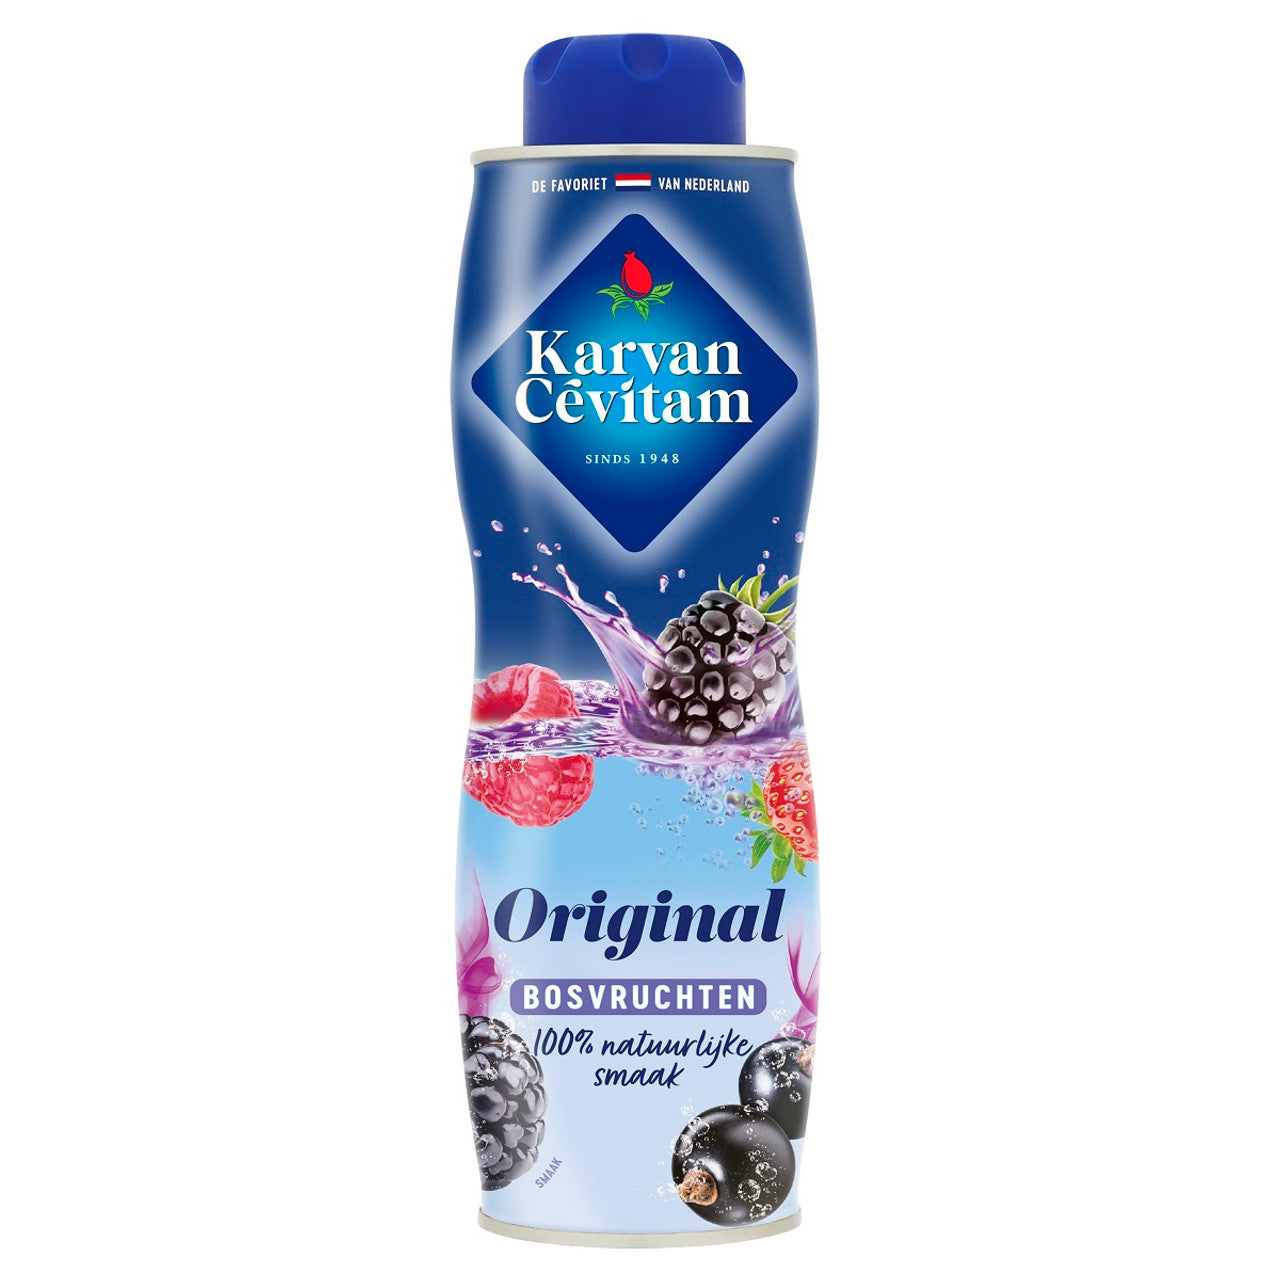 Karvan Cevitam Siroop bosvruchten (600 ml)/ Drink syrup Forest fruit flavour